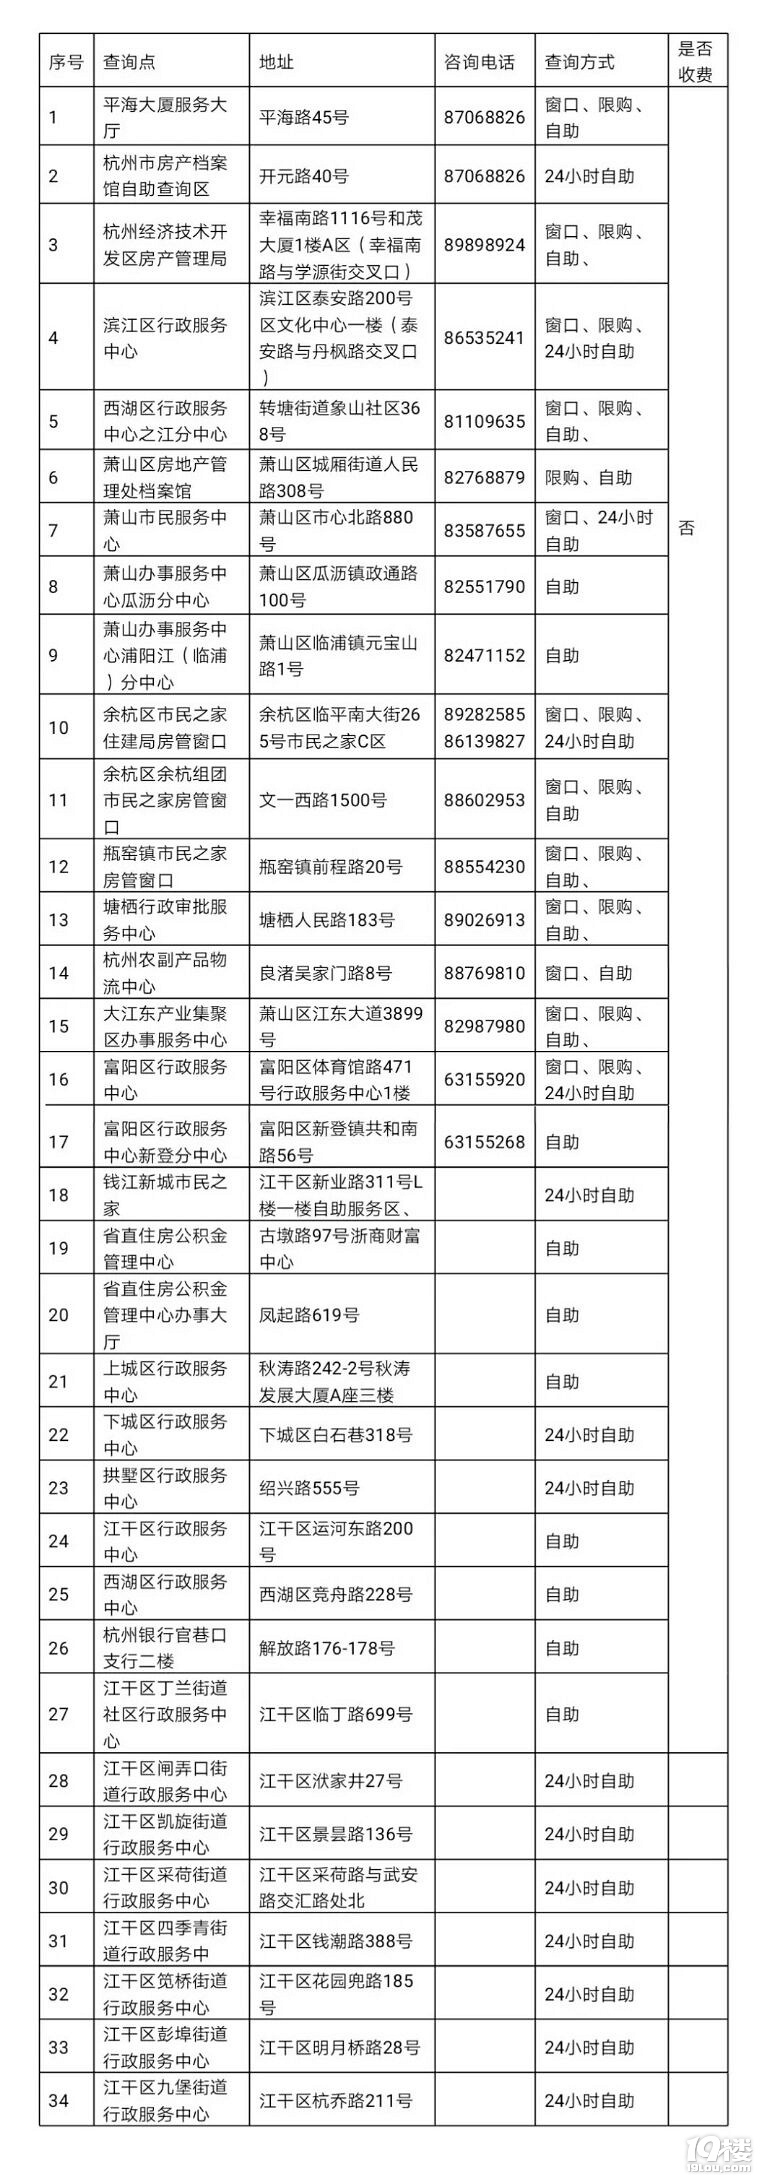 杭州新增8处房产档案自助查询点近日,市住